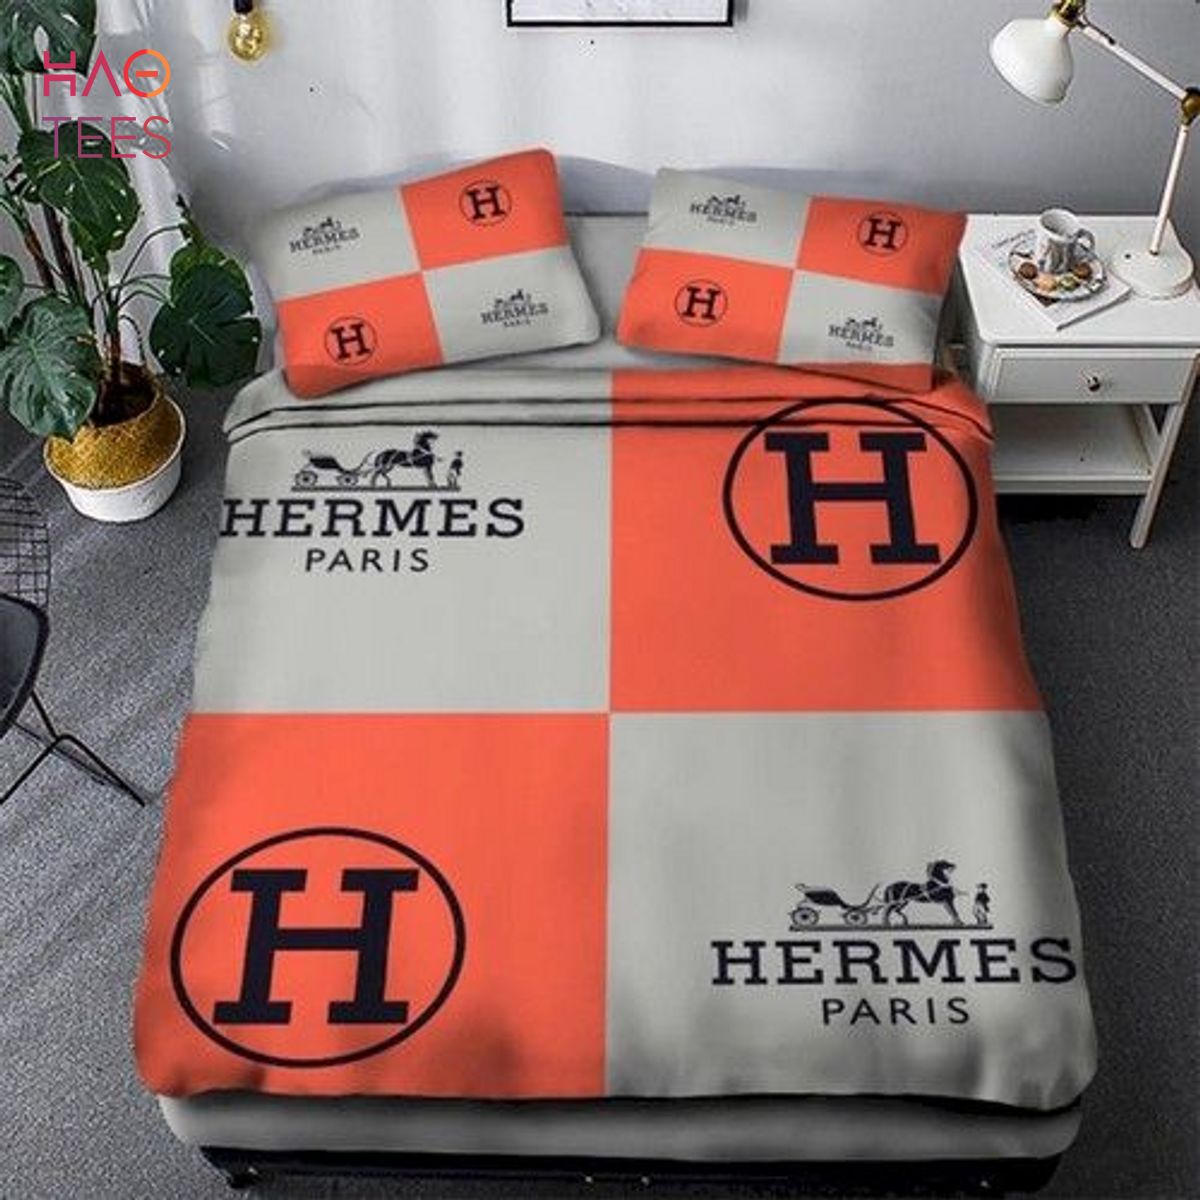 [THE BEST] Hermes Luxury Brand Gray Mix Orange Duvet Cover Bedding Set